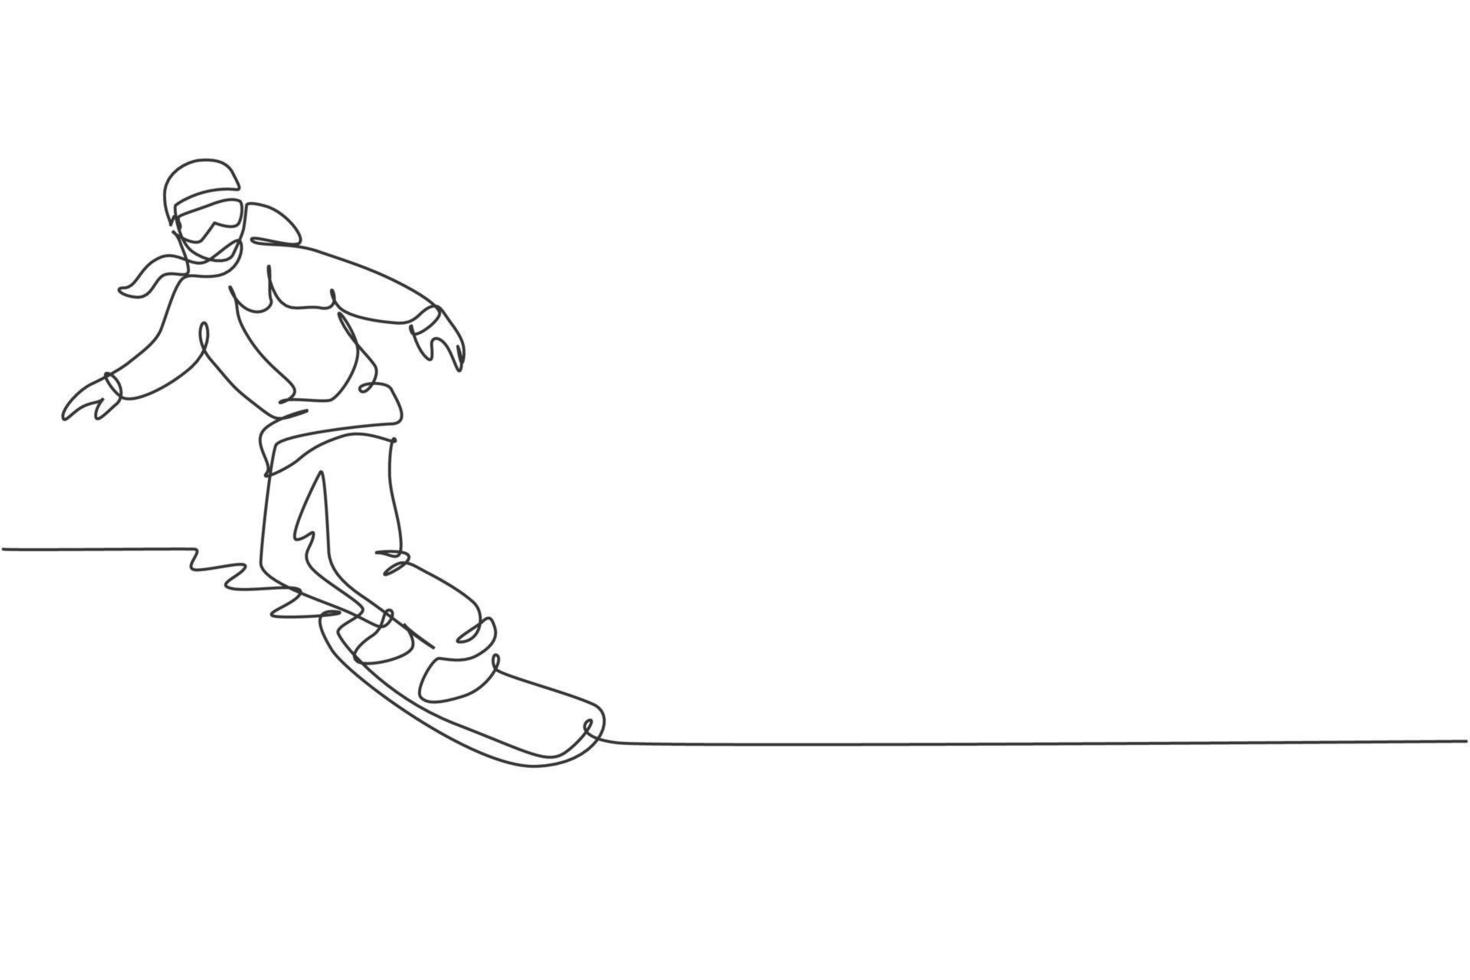 una linea continua che disegna giovane donna sportiva snowboarder in sella a snowboard in montagna innevata delle Alpi. concetto di sport lifestyle invernale. illustrazione vettoriale grafica di disegno dinamico a linea singola